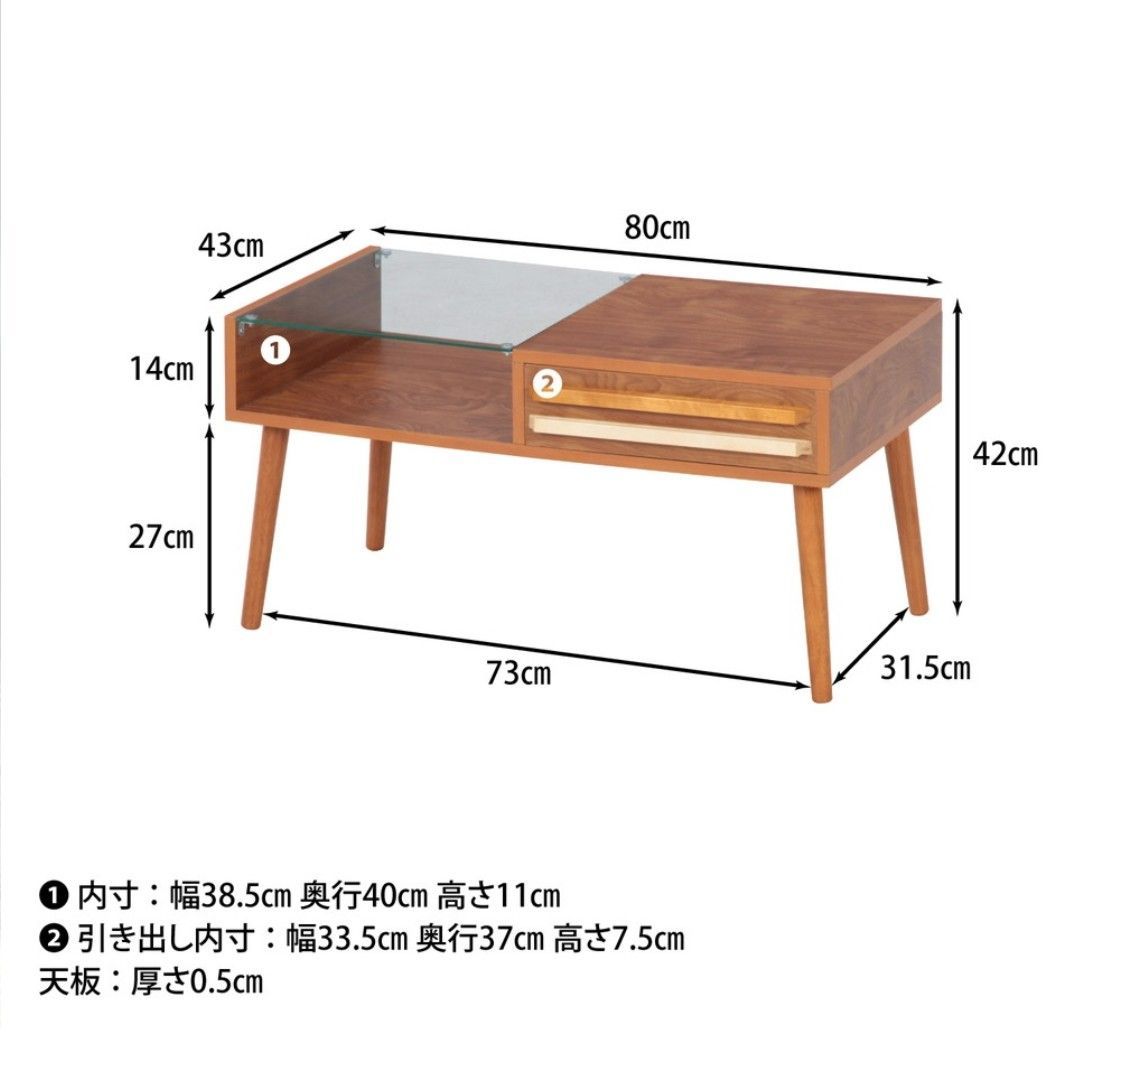 リビングテーブル オスロ ミディアムブラウン116kg規格材質 - ローテーブル